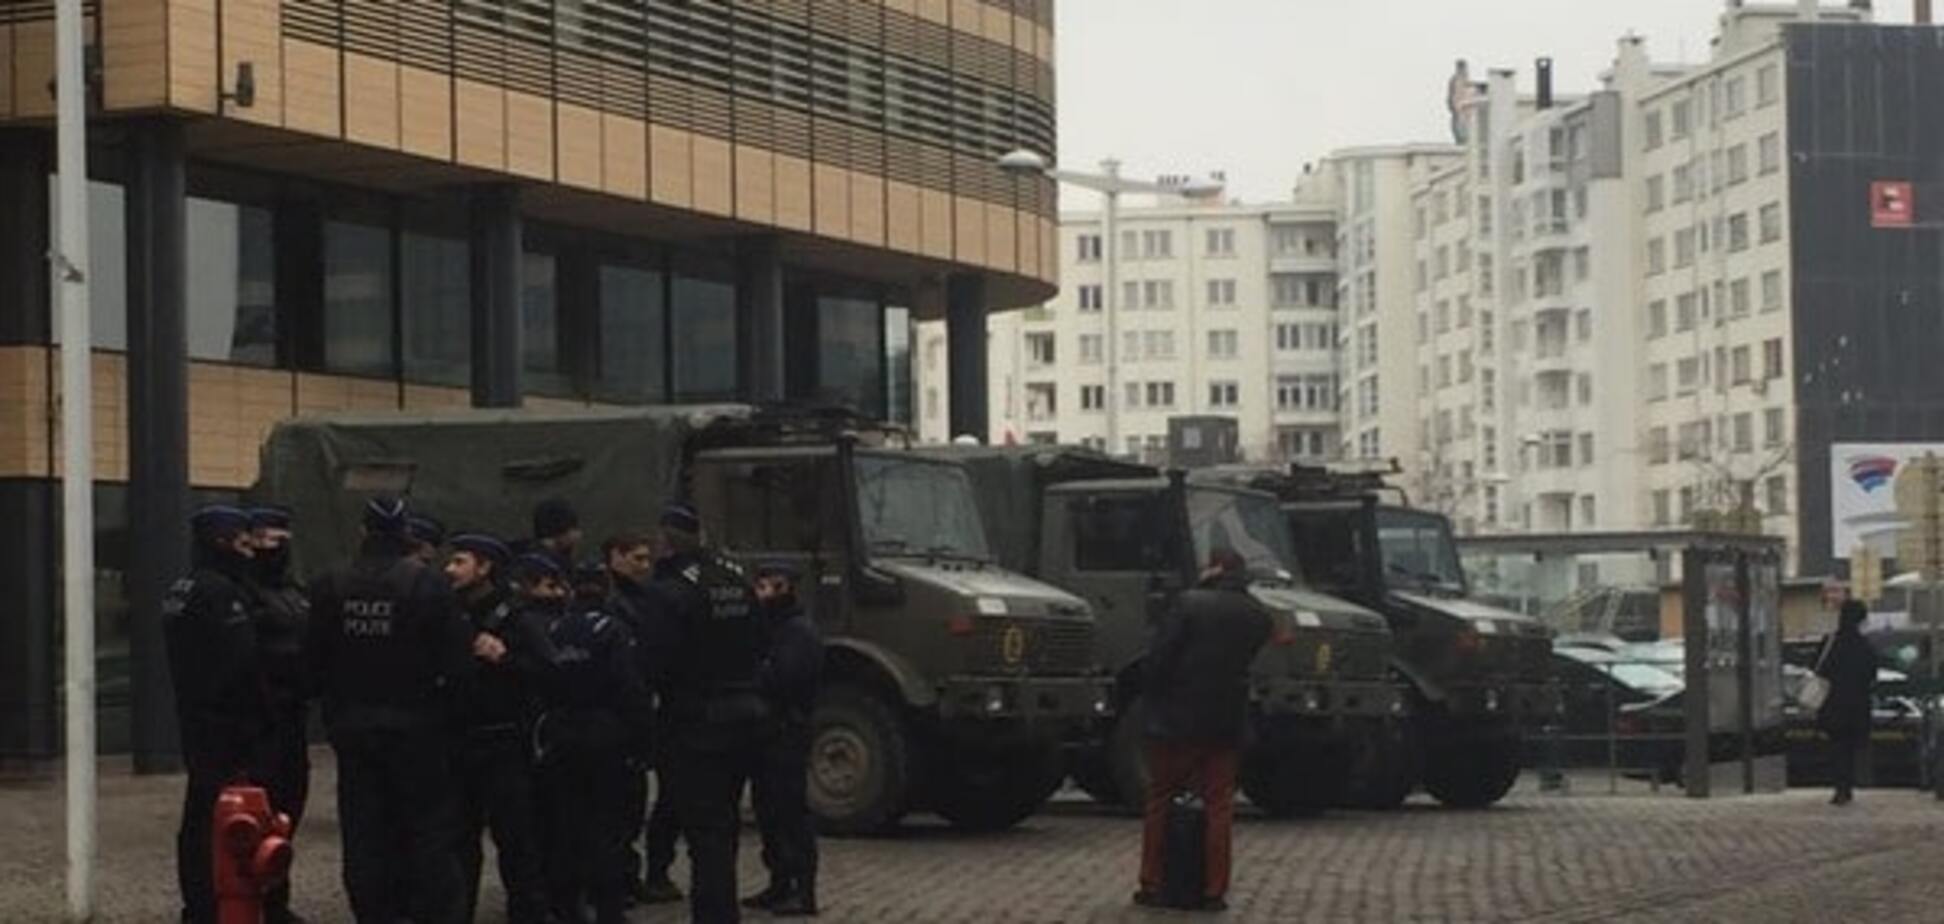 БТРы и вооруженные военные: украинский нардеп описала утро в Брюсселе. Опубликованы фото